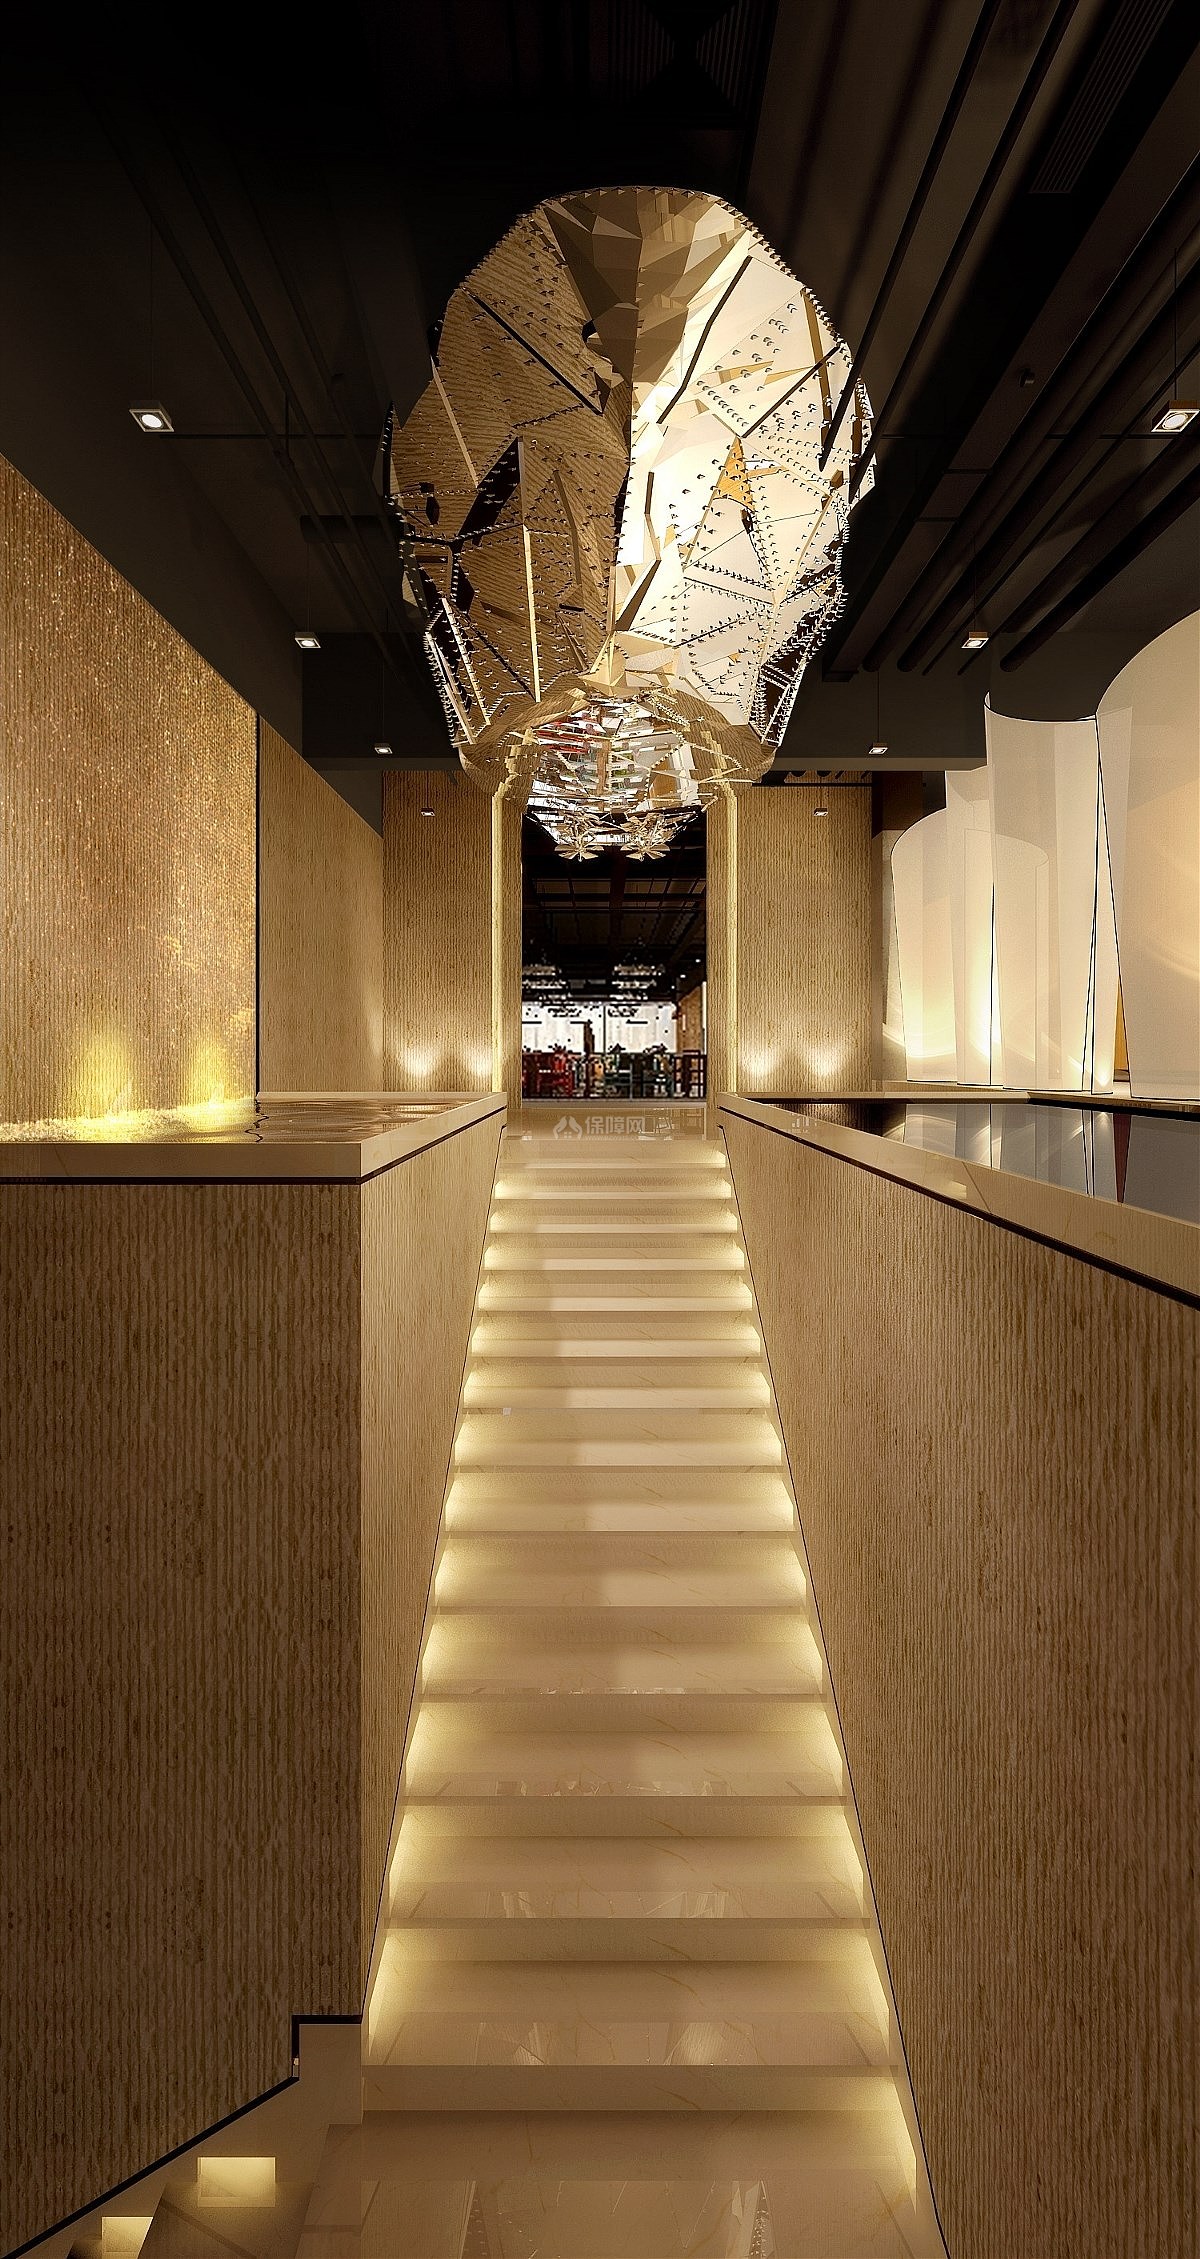 川行时尚主题火锅餐厅之楼梯口设计效果图